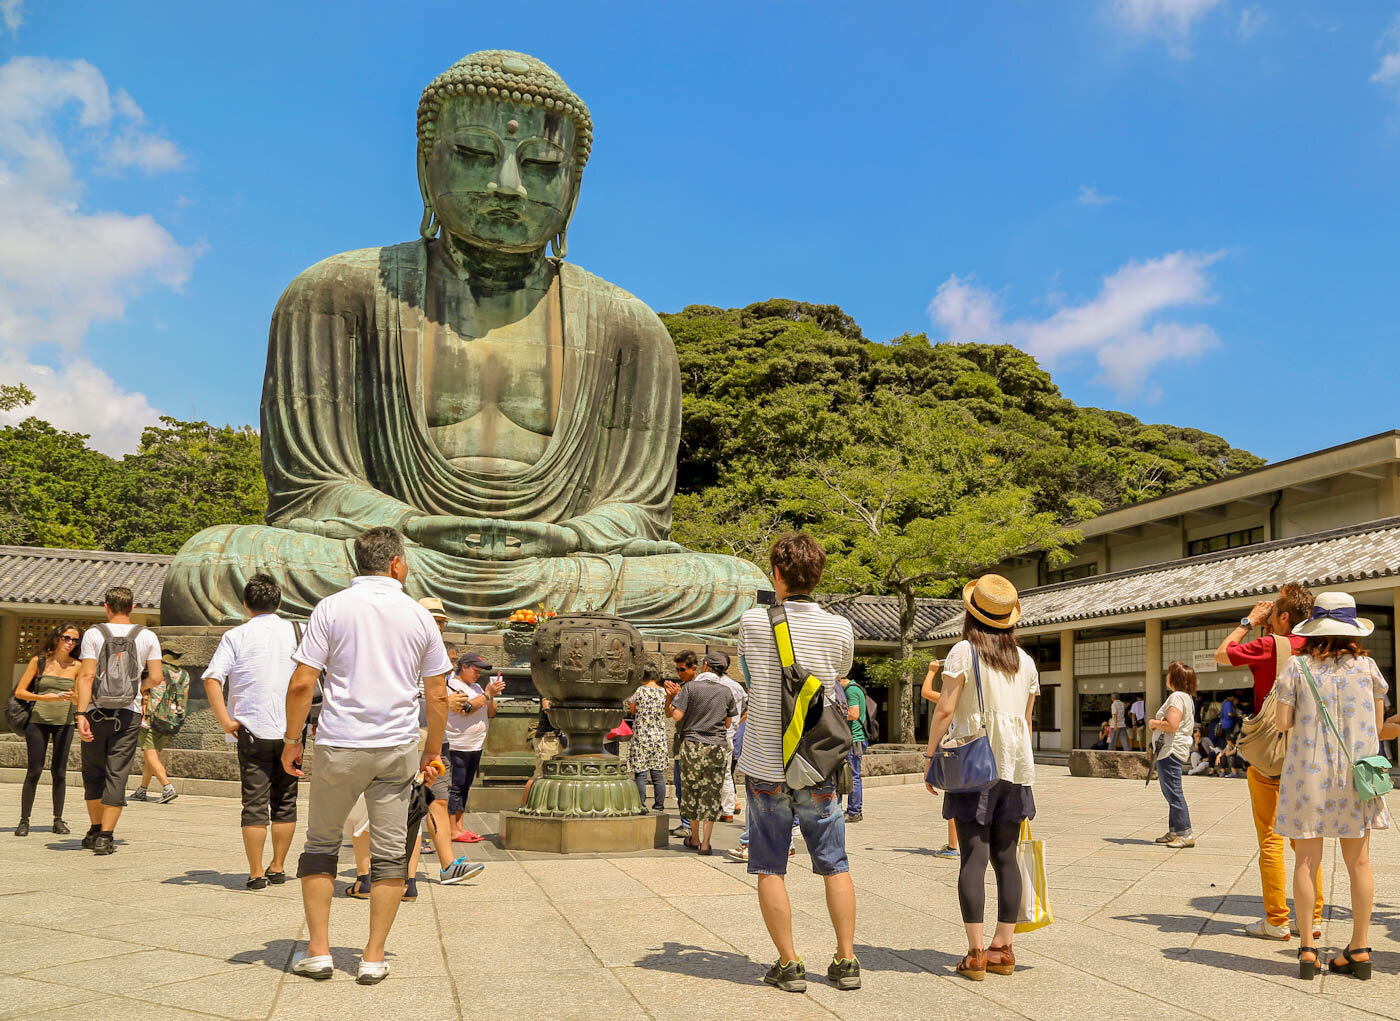 Les 7 postures de Bouddha - Cool Asia Travel